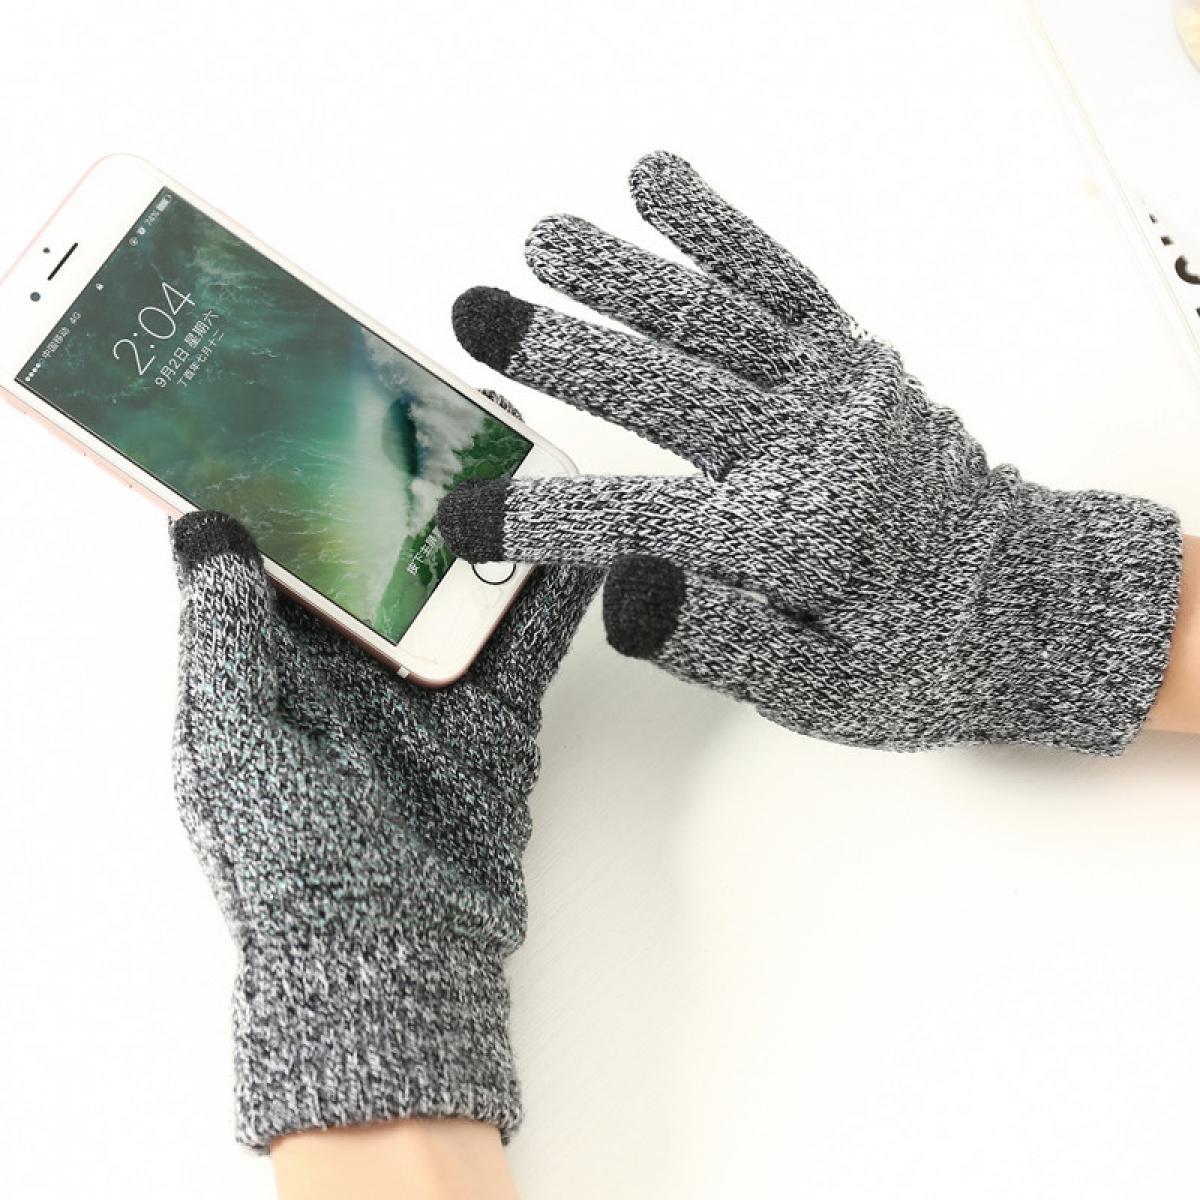 Shot - Gants Homme tactiles pour XIAOMI Mi 9 Smartphone Taille M 3 doigts Hiver (NOIR) - Autres accessoires smartphone